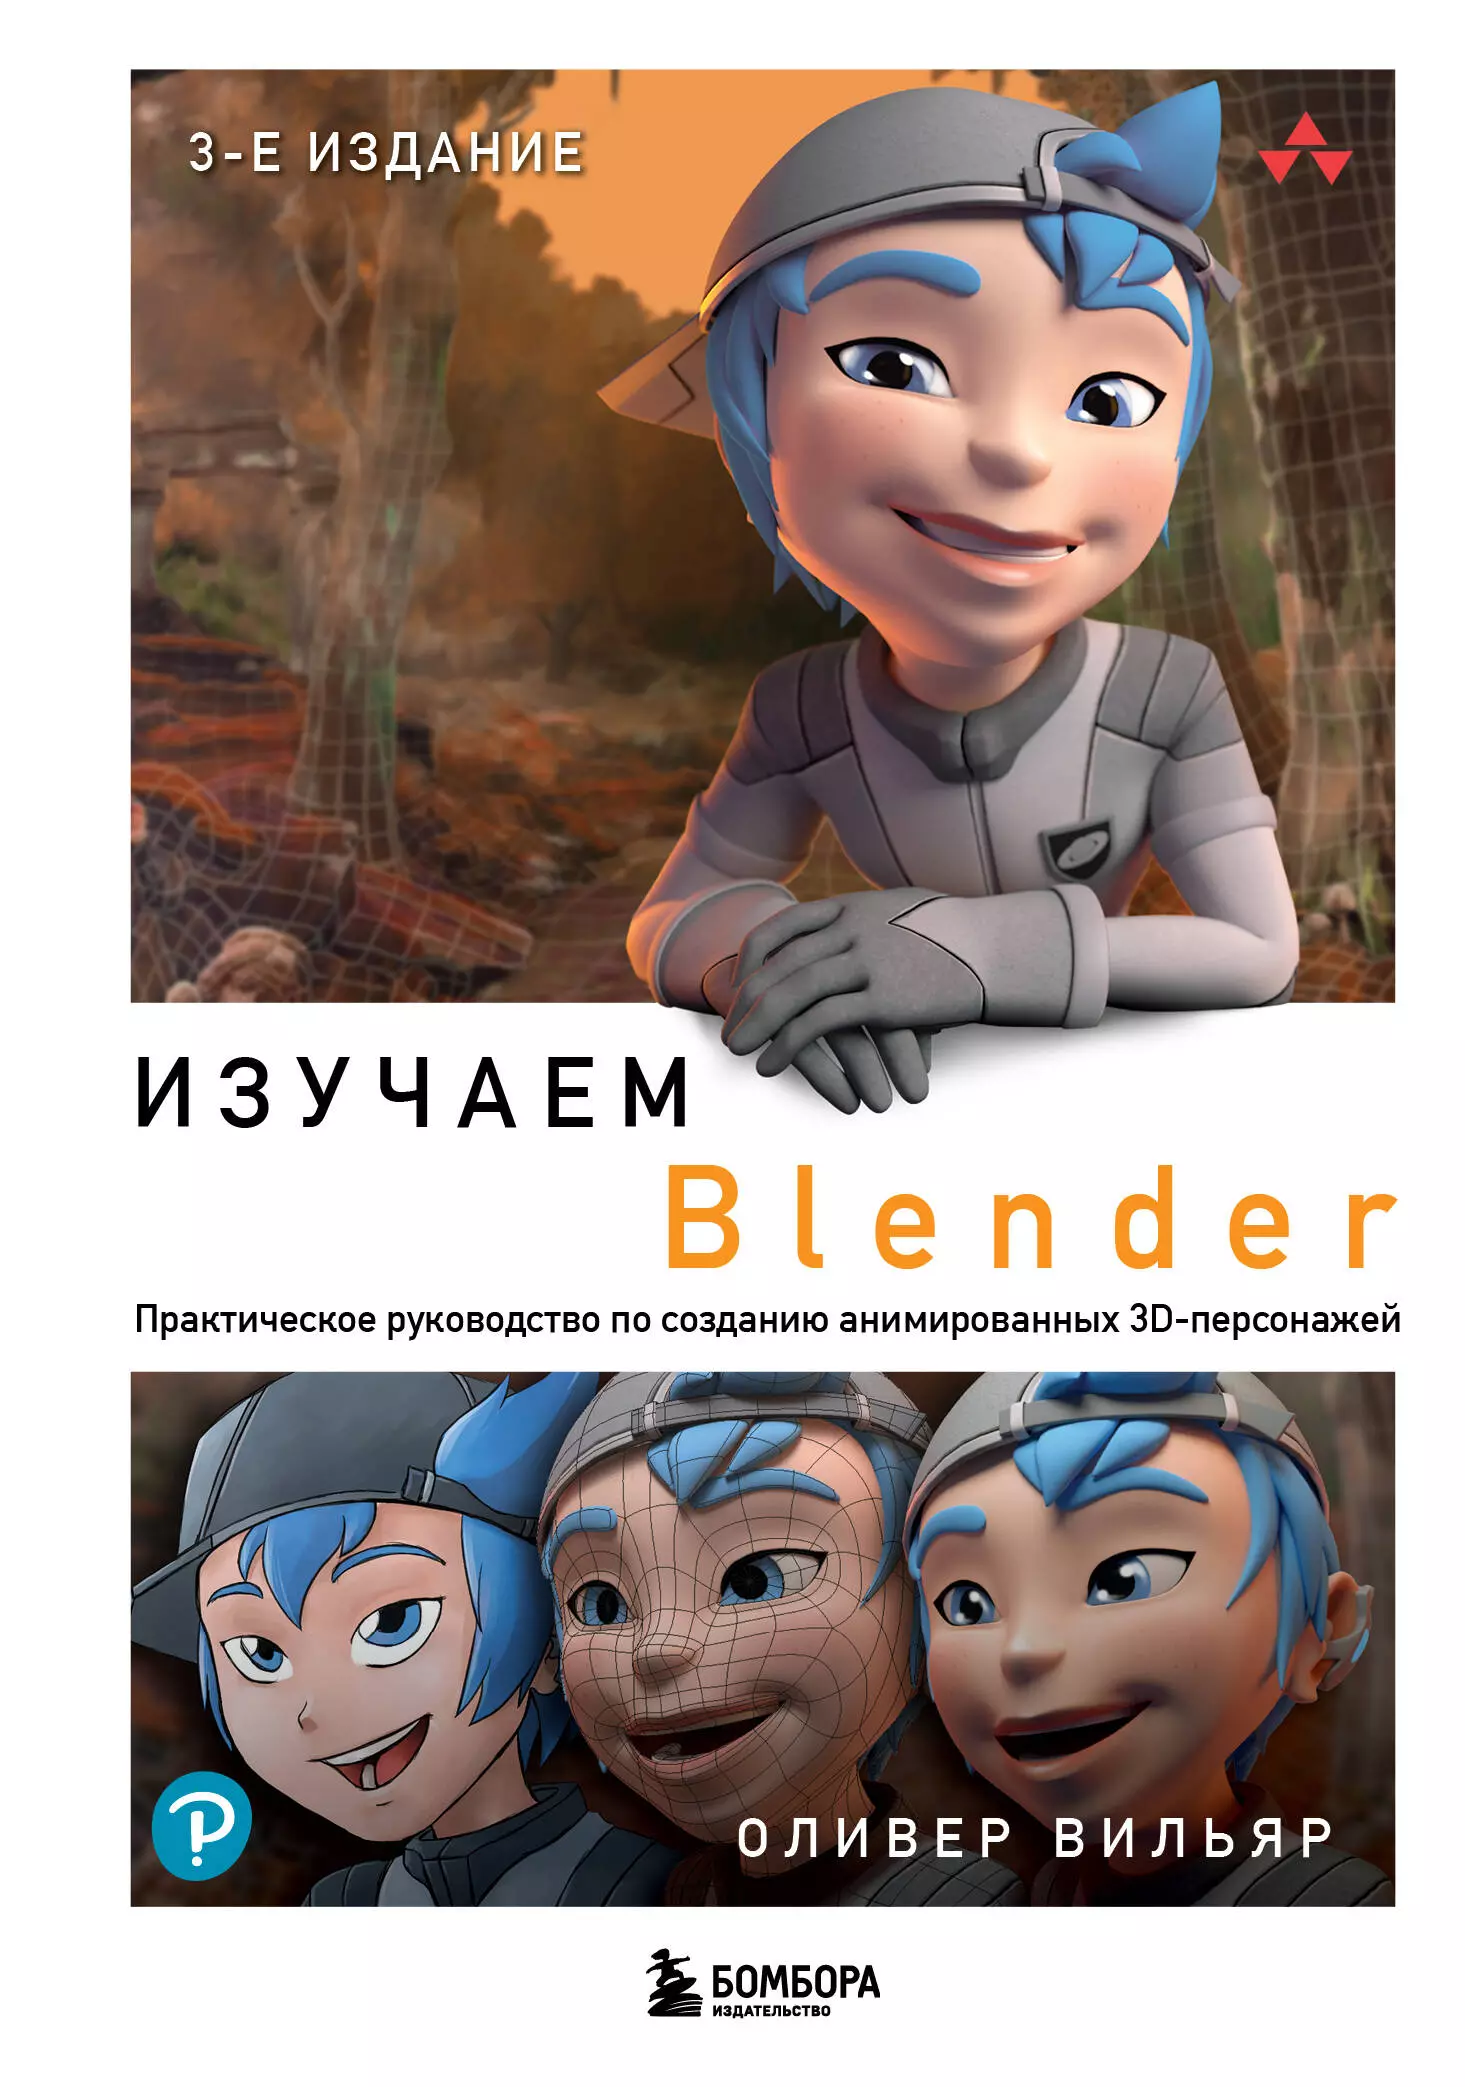 Изучаем Blender: Практическое руководство по созданию анимированных 3D-персонажей курсы скульптинга персонажей в blender 3d